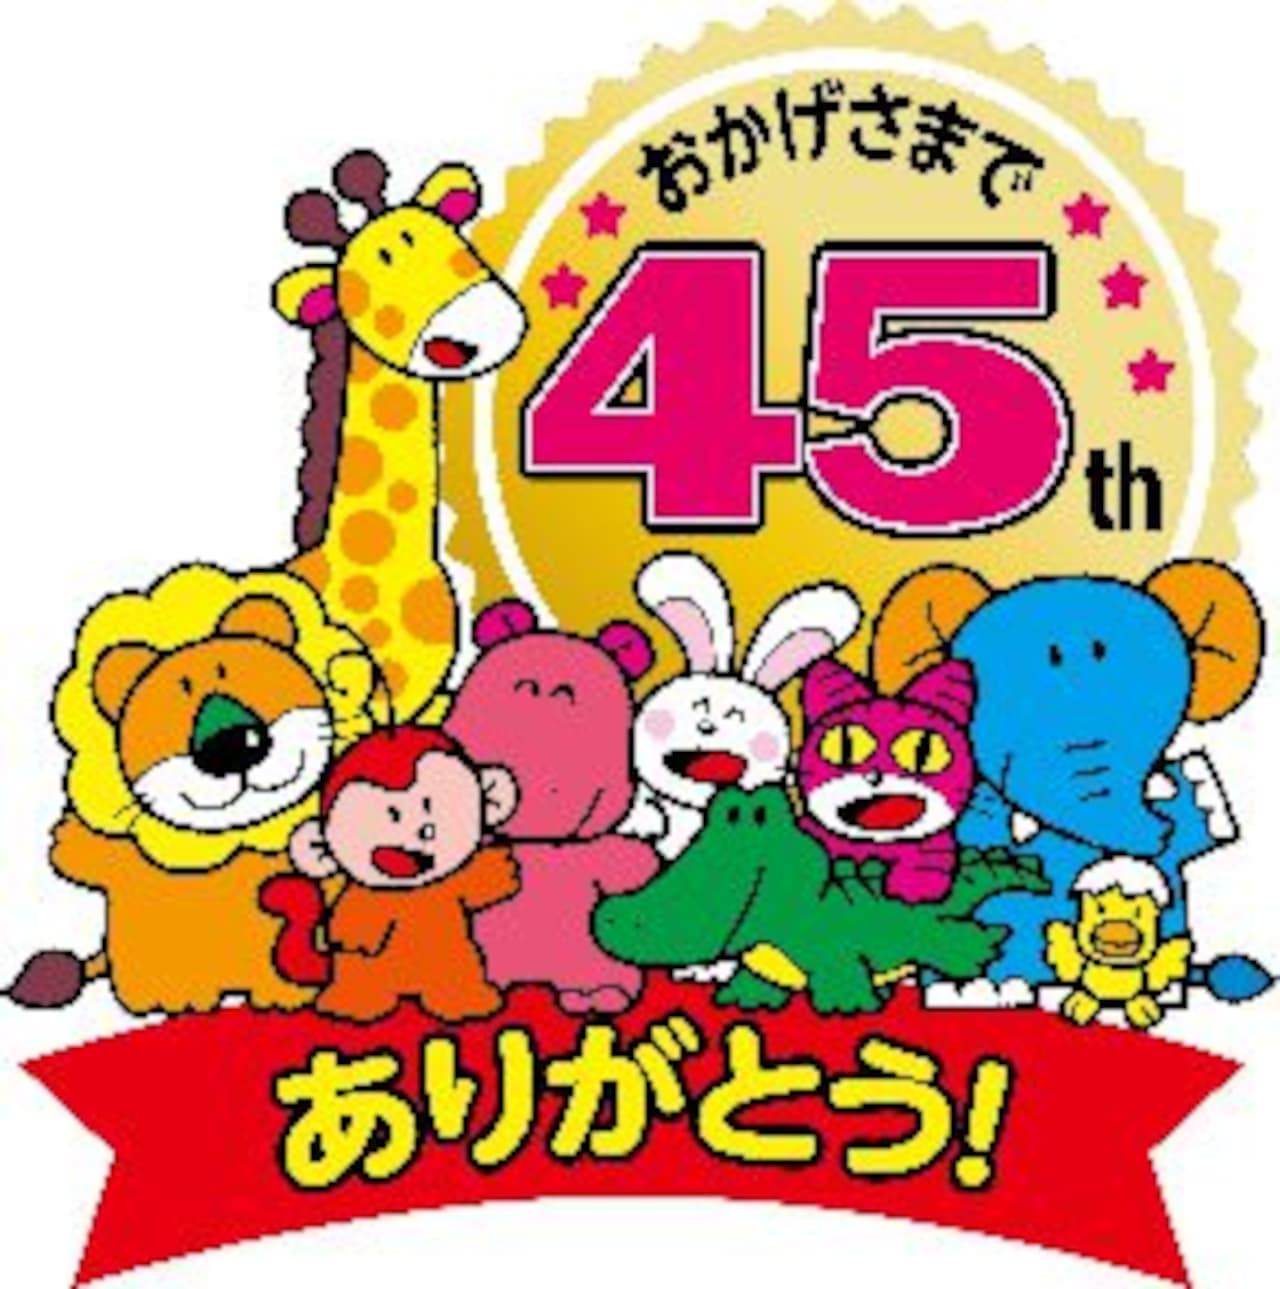 GINBIS "TABEKO DOBUTSU" 45th Anniversary